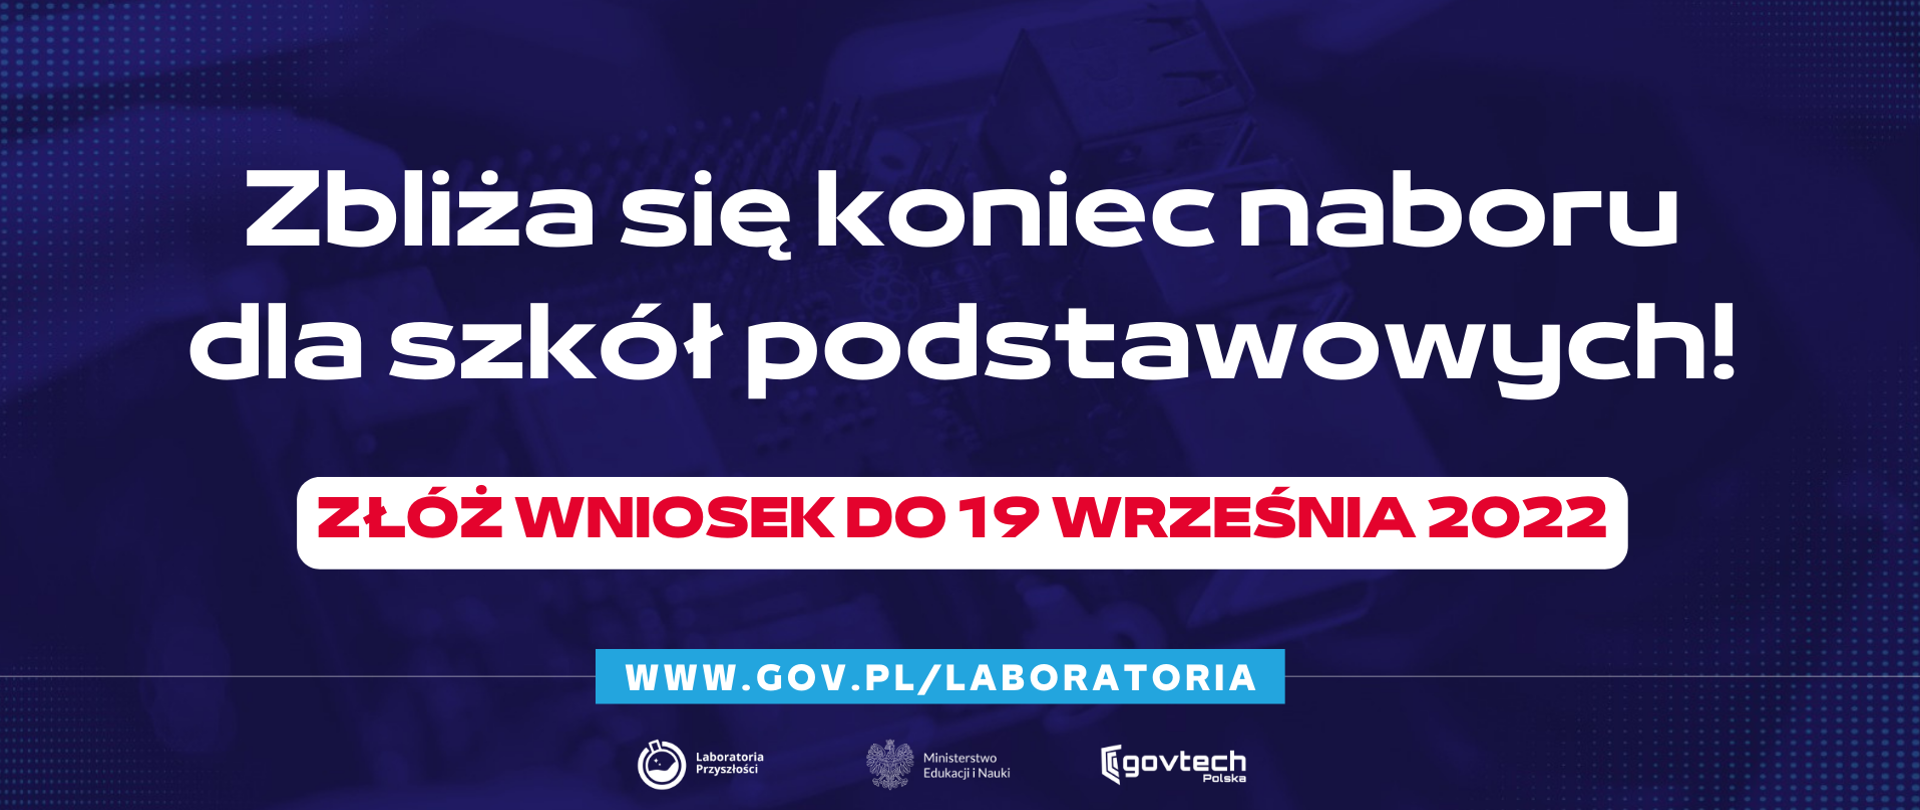 Zbliża się koniec naboru dla szkół podstawowych!
Złóż wniosek do 19 września 2022
www.gov.pl/laboratoria